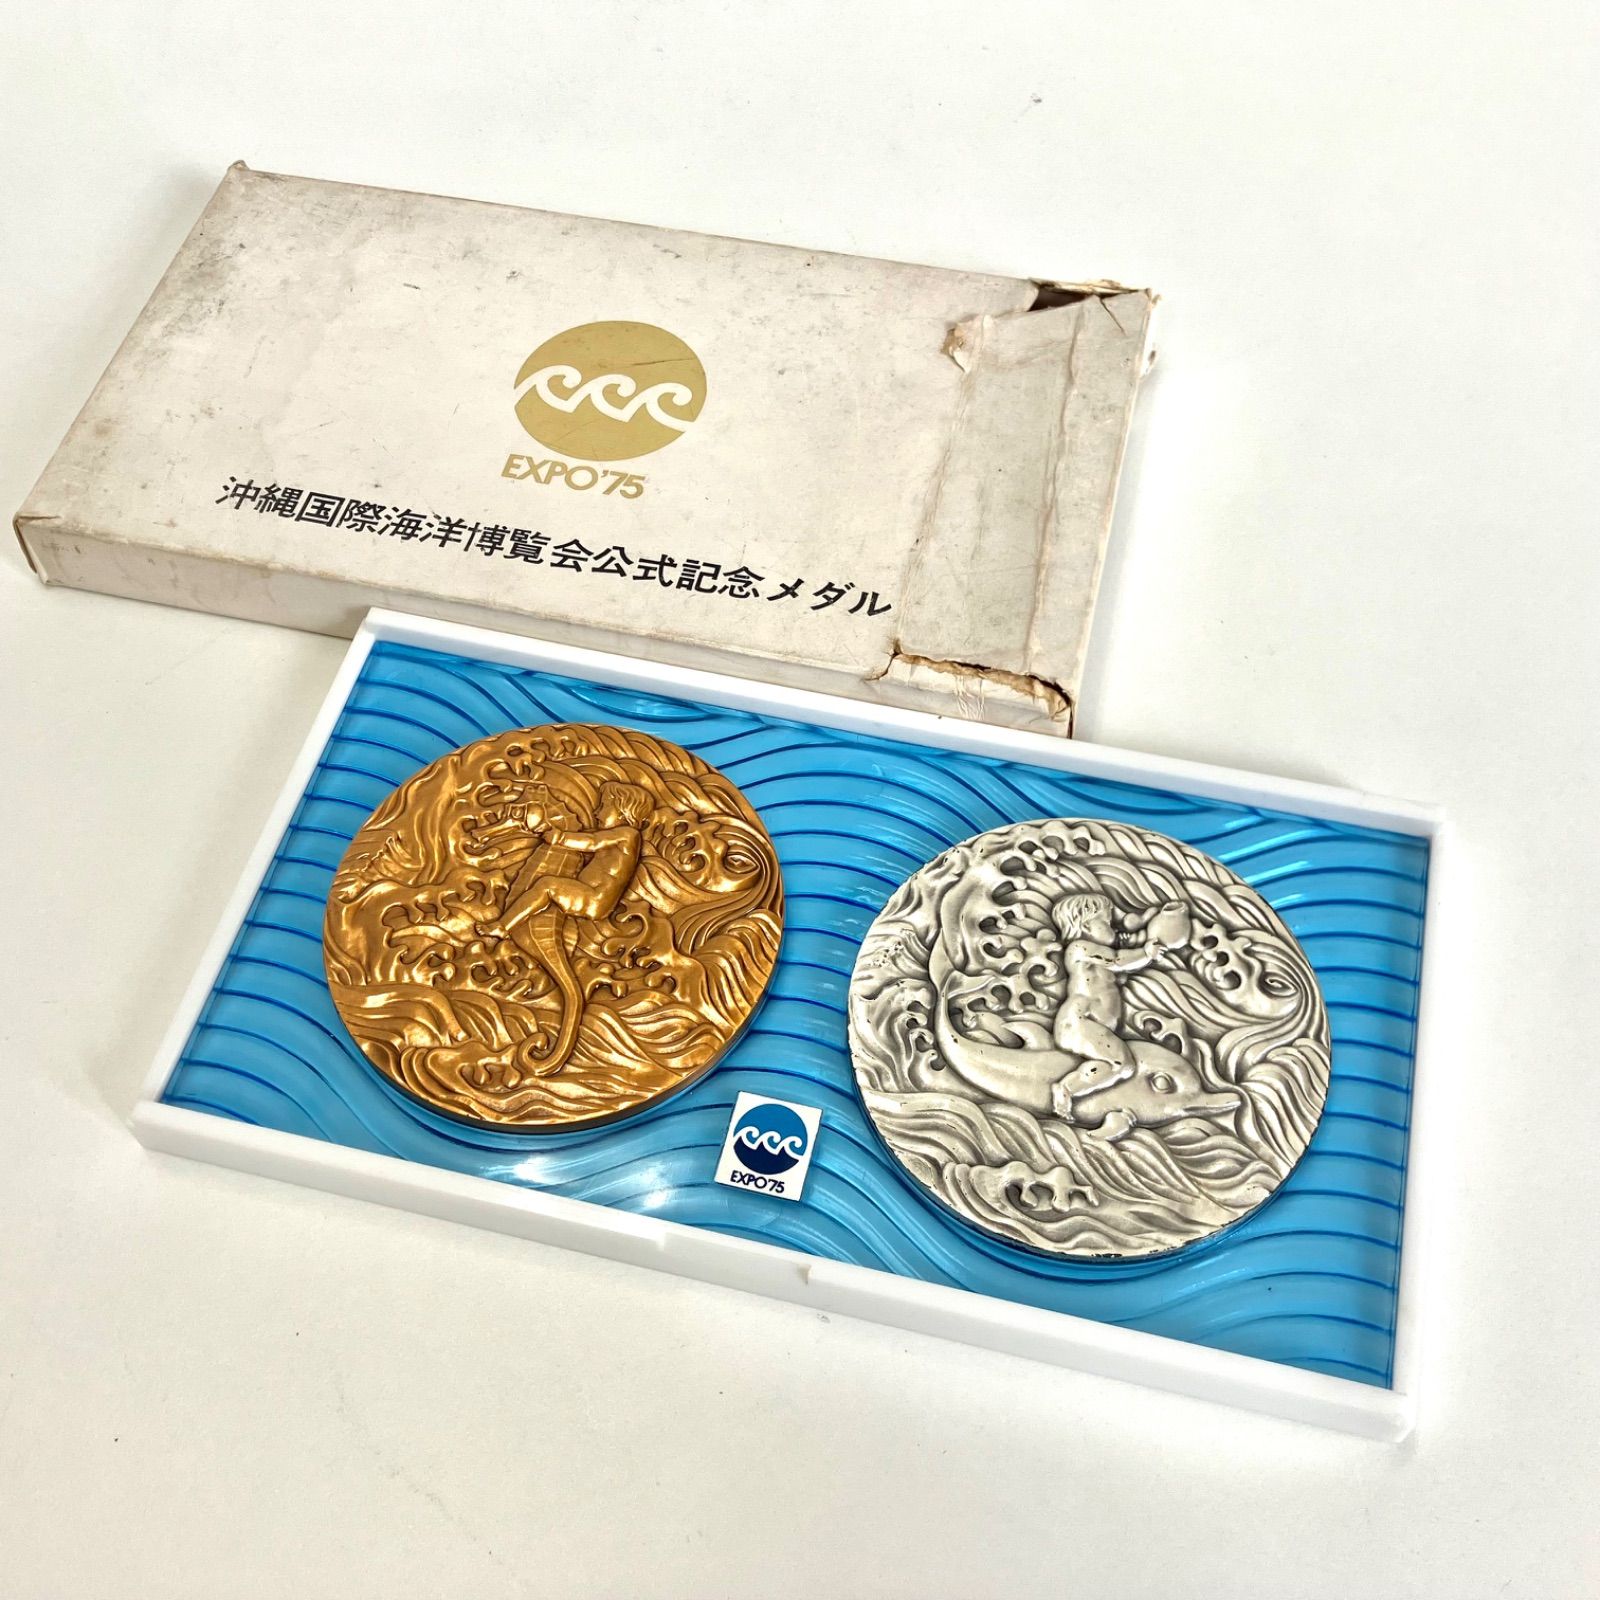 どうぞよろしくお願いいたします沖縄国際海洋博覧会公式記念メダル